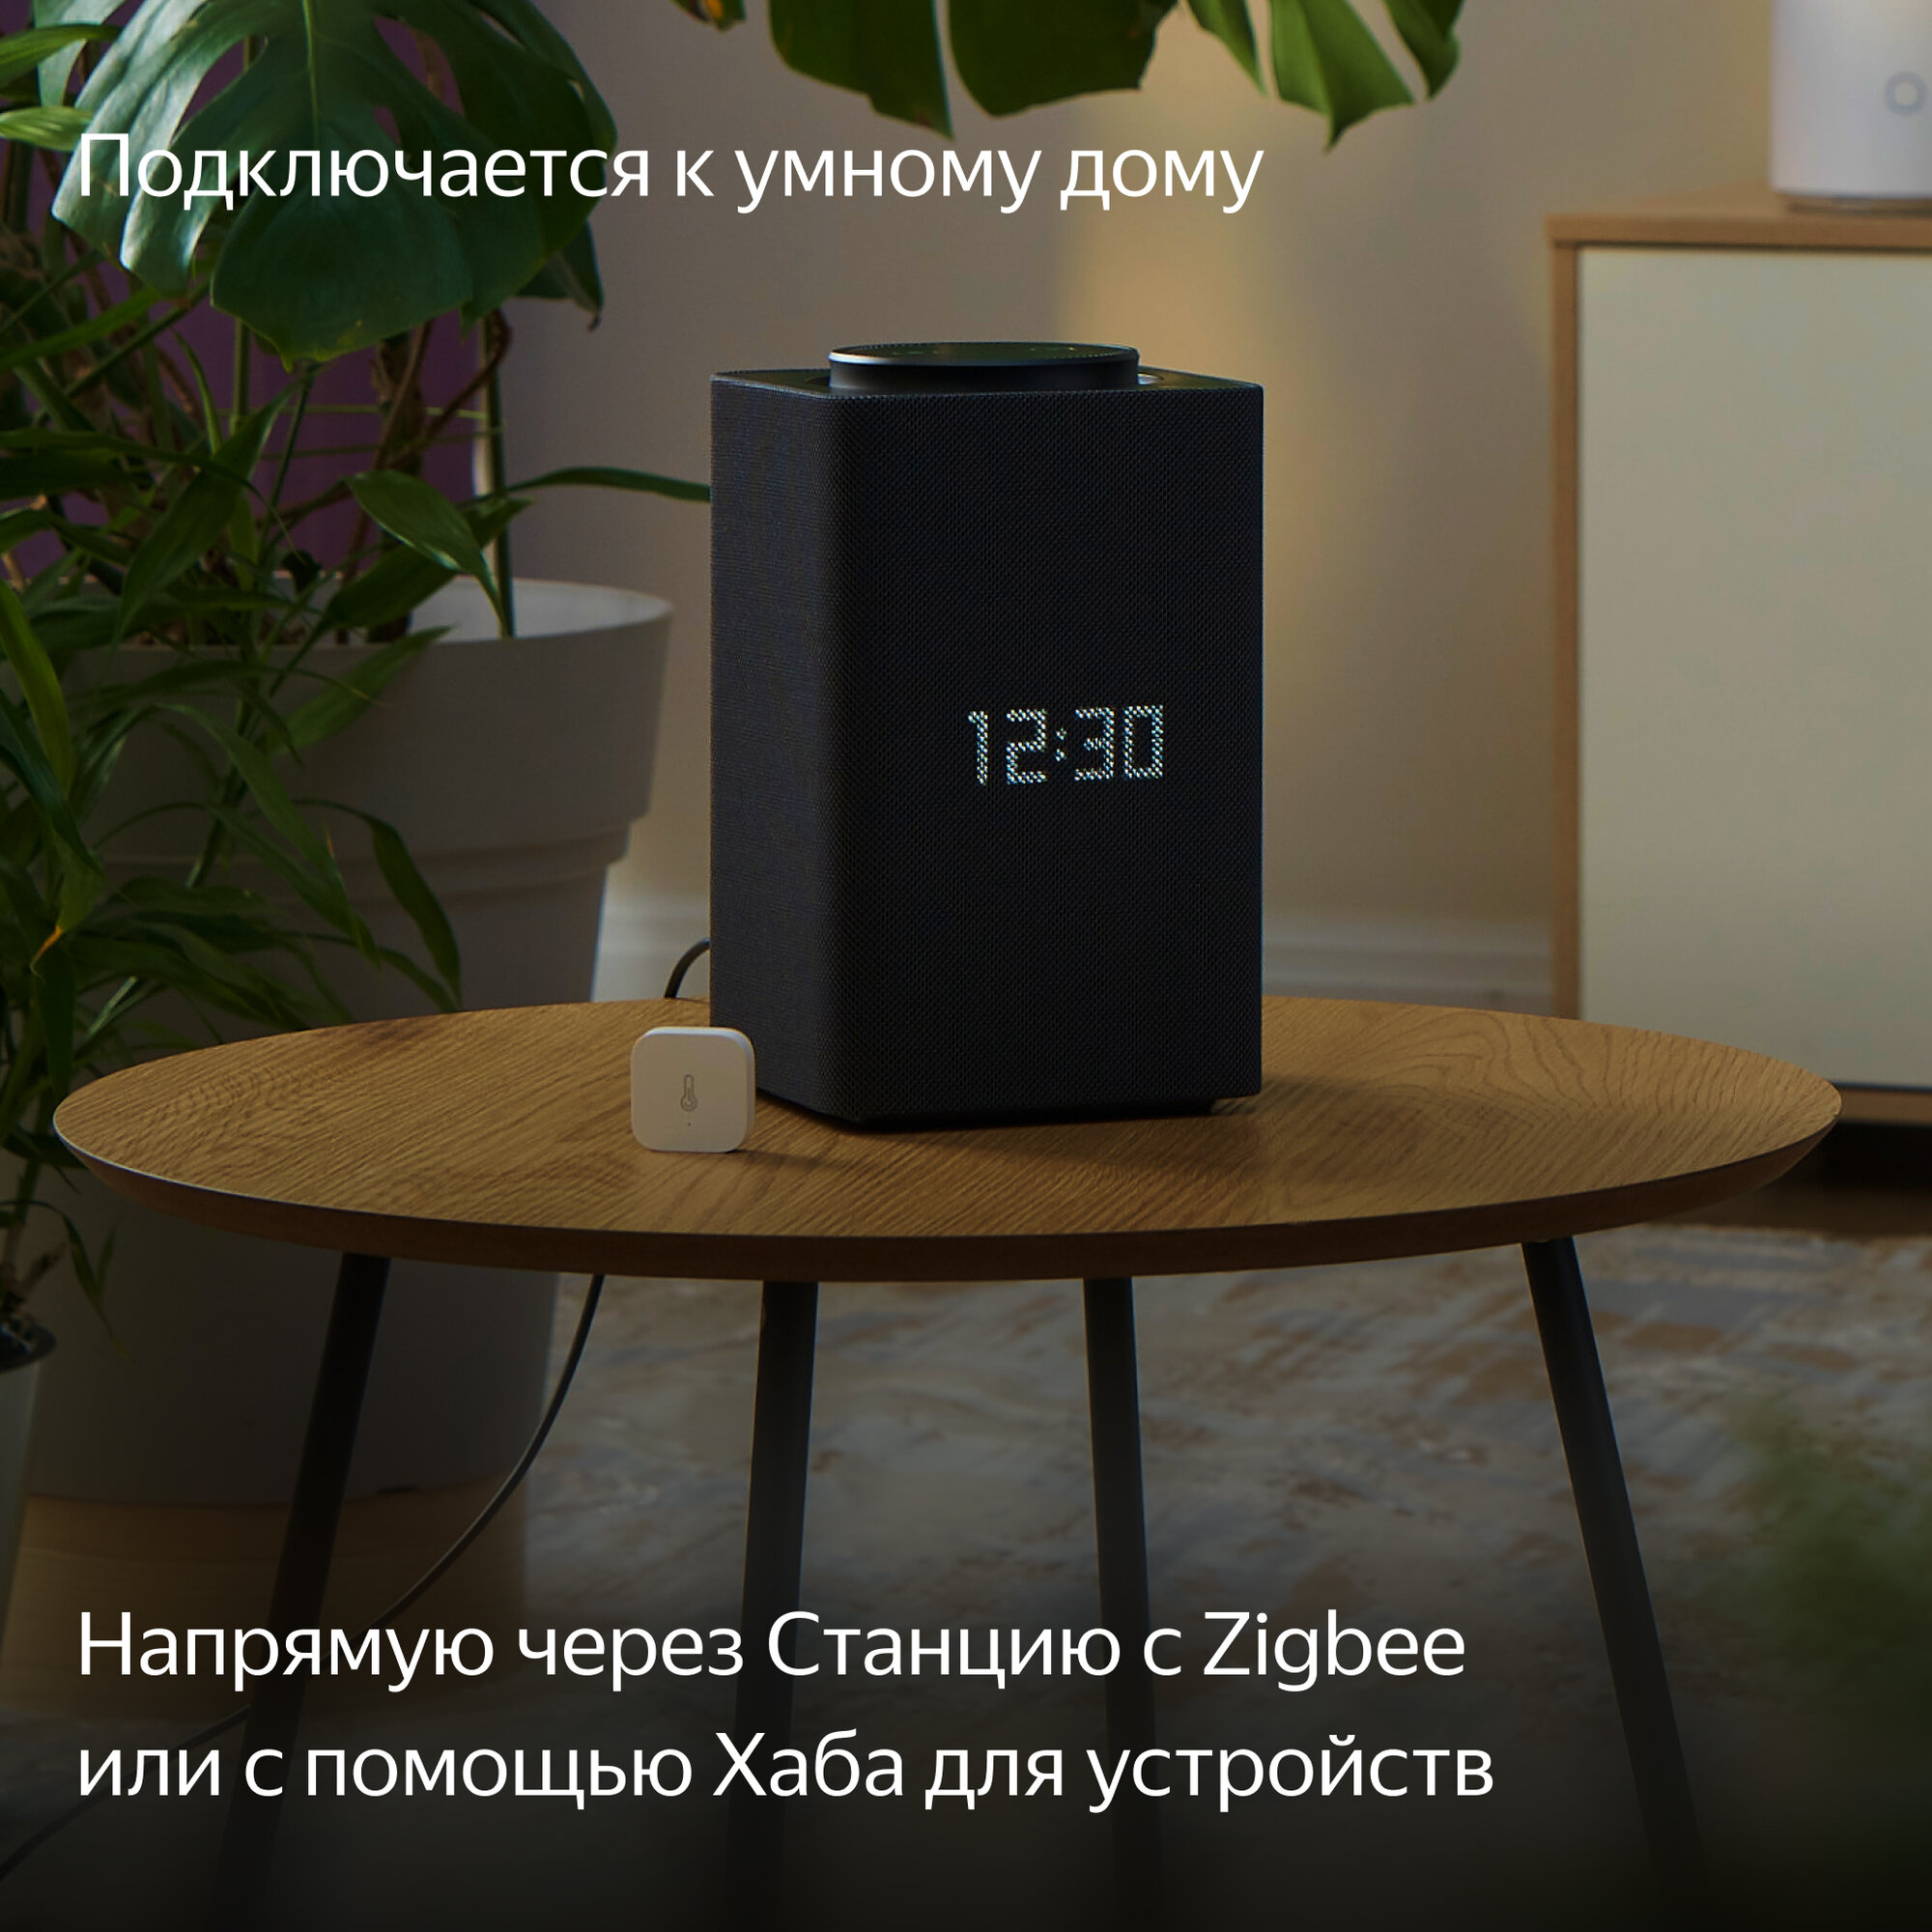 Комнатный датчик температуры и влажности Яндекс YNDX-00523